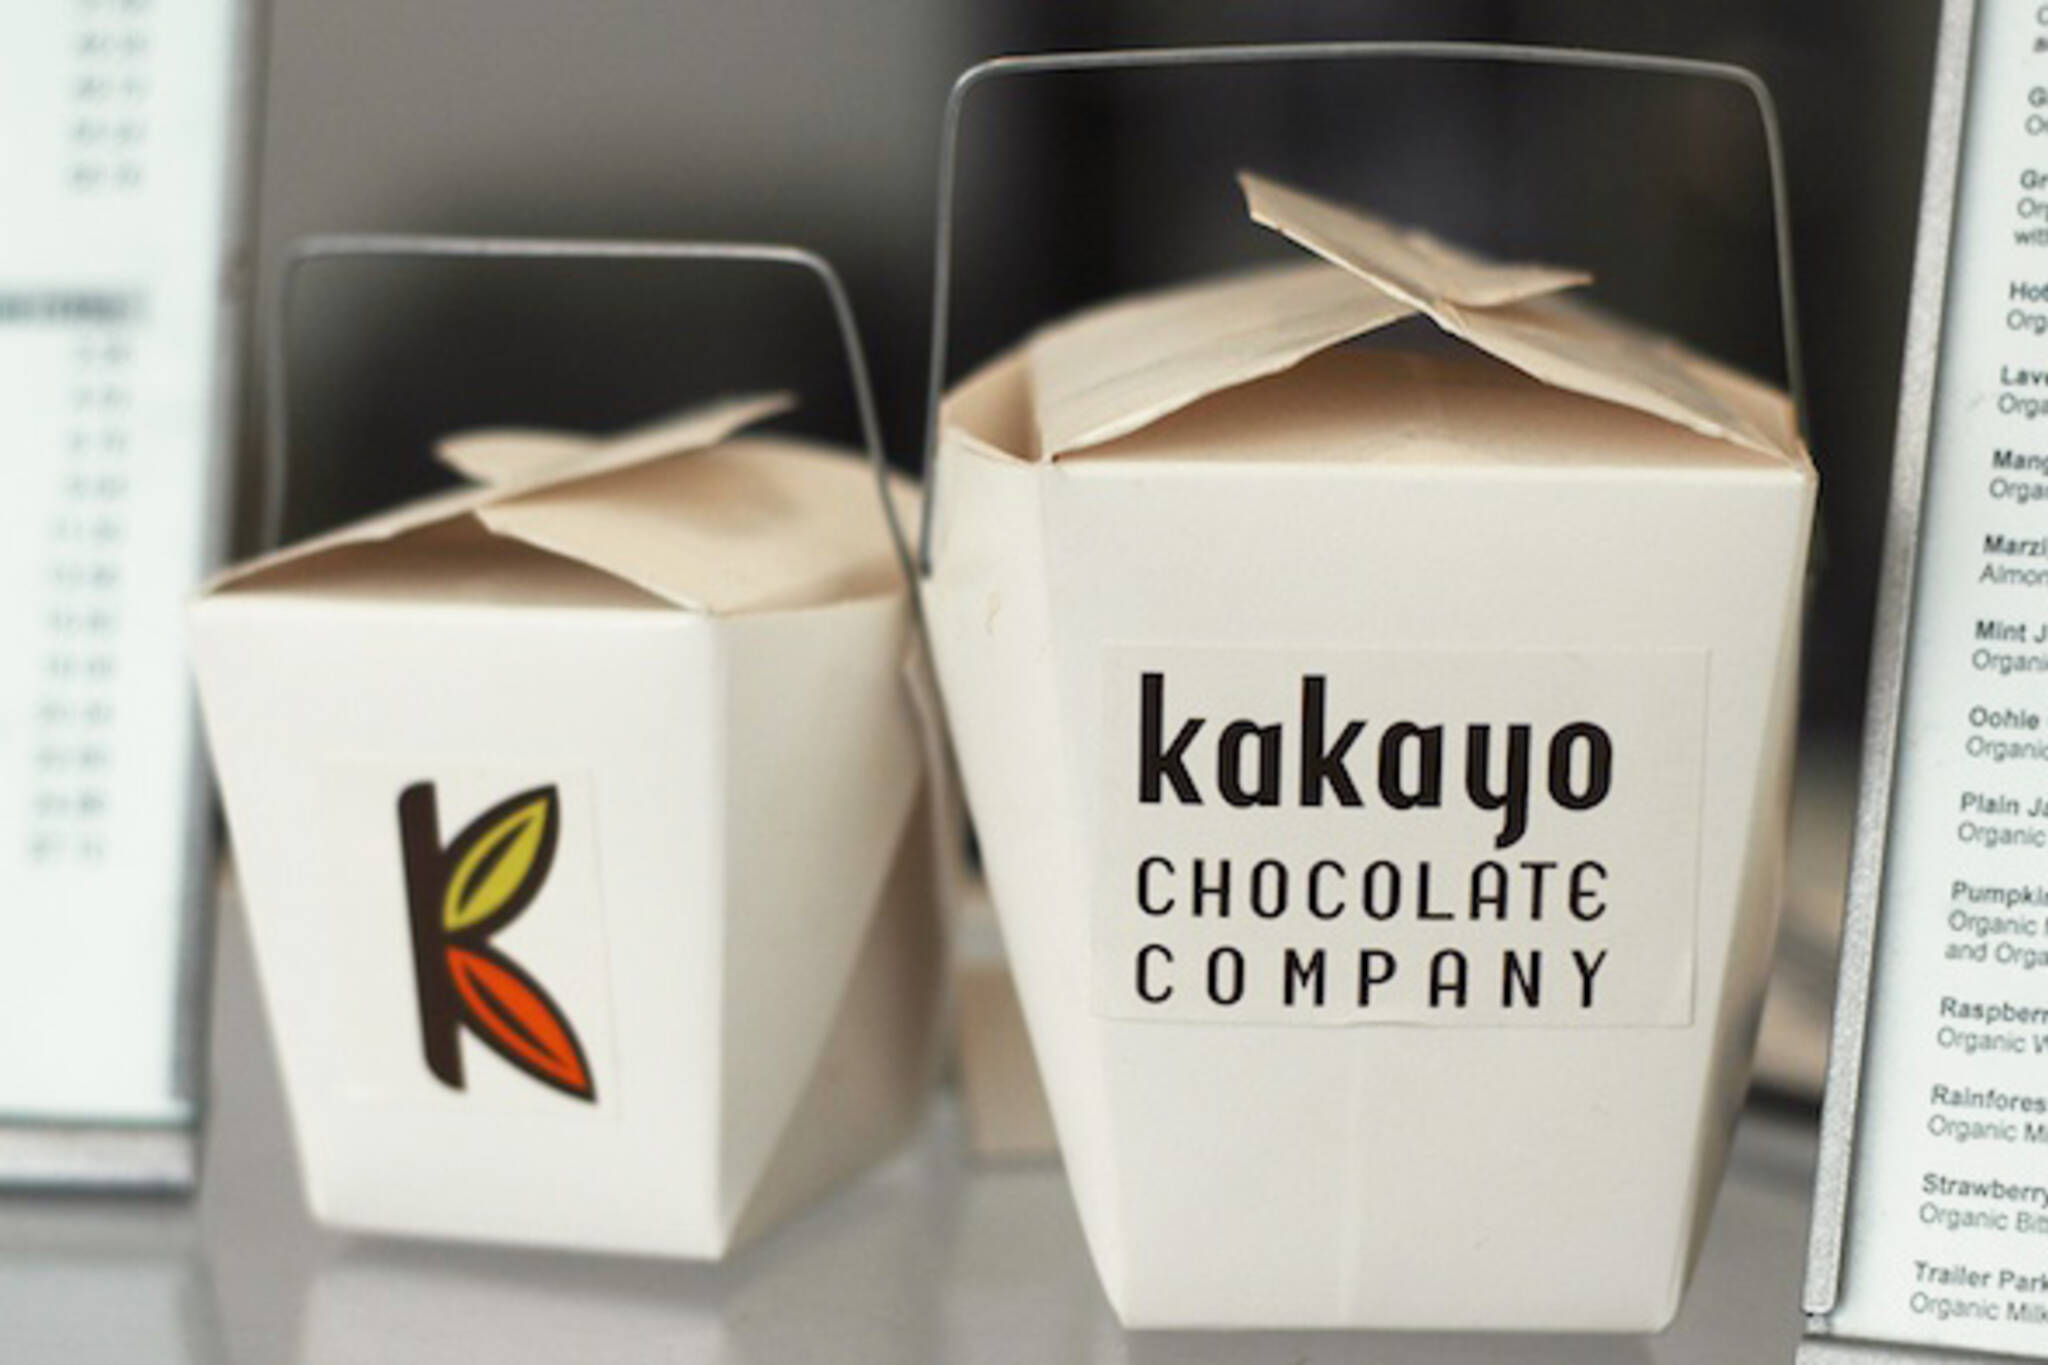 Kakayo Chocolate